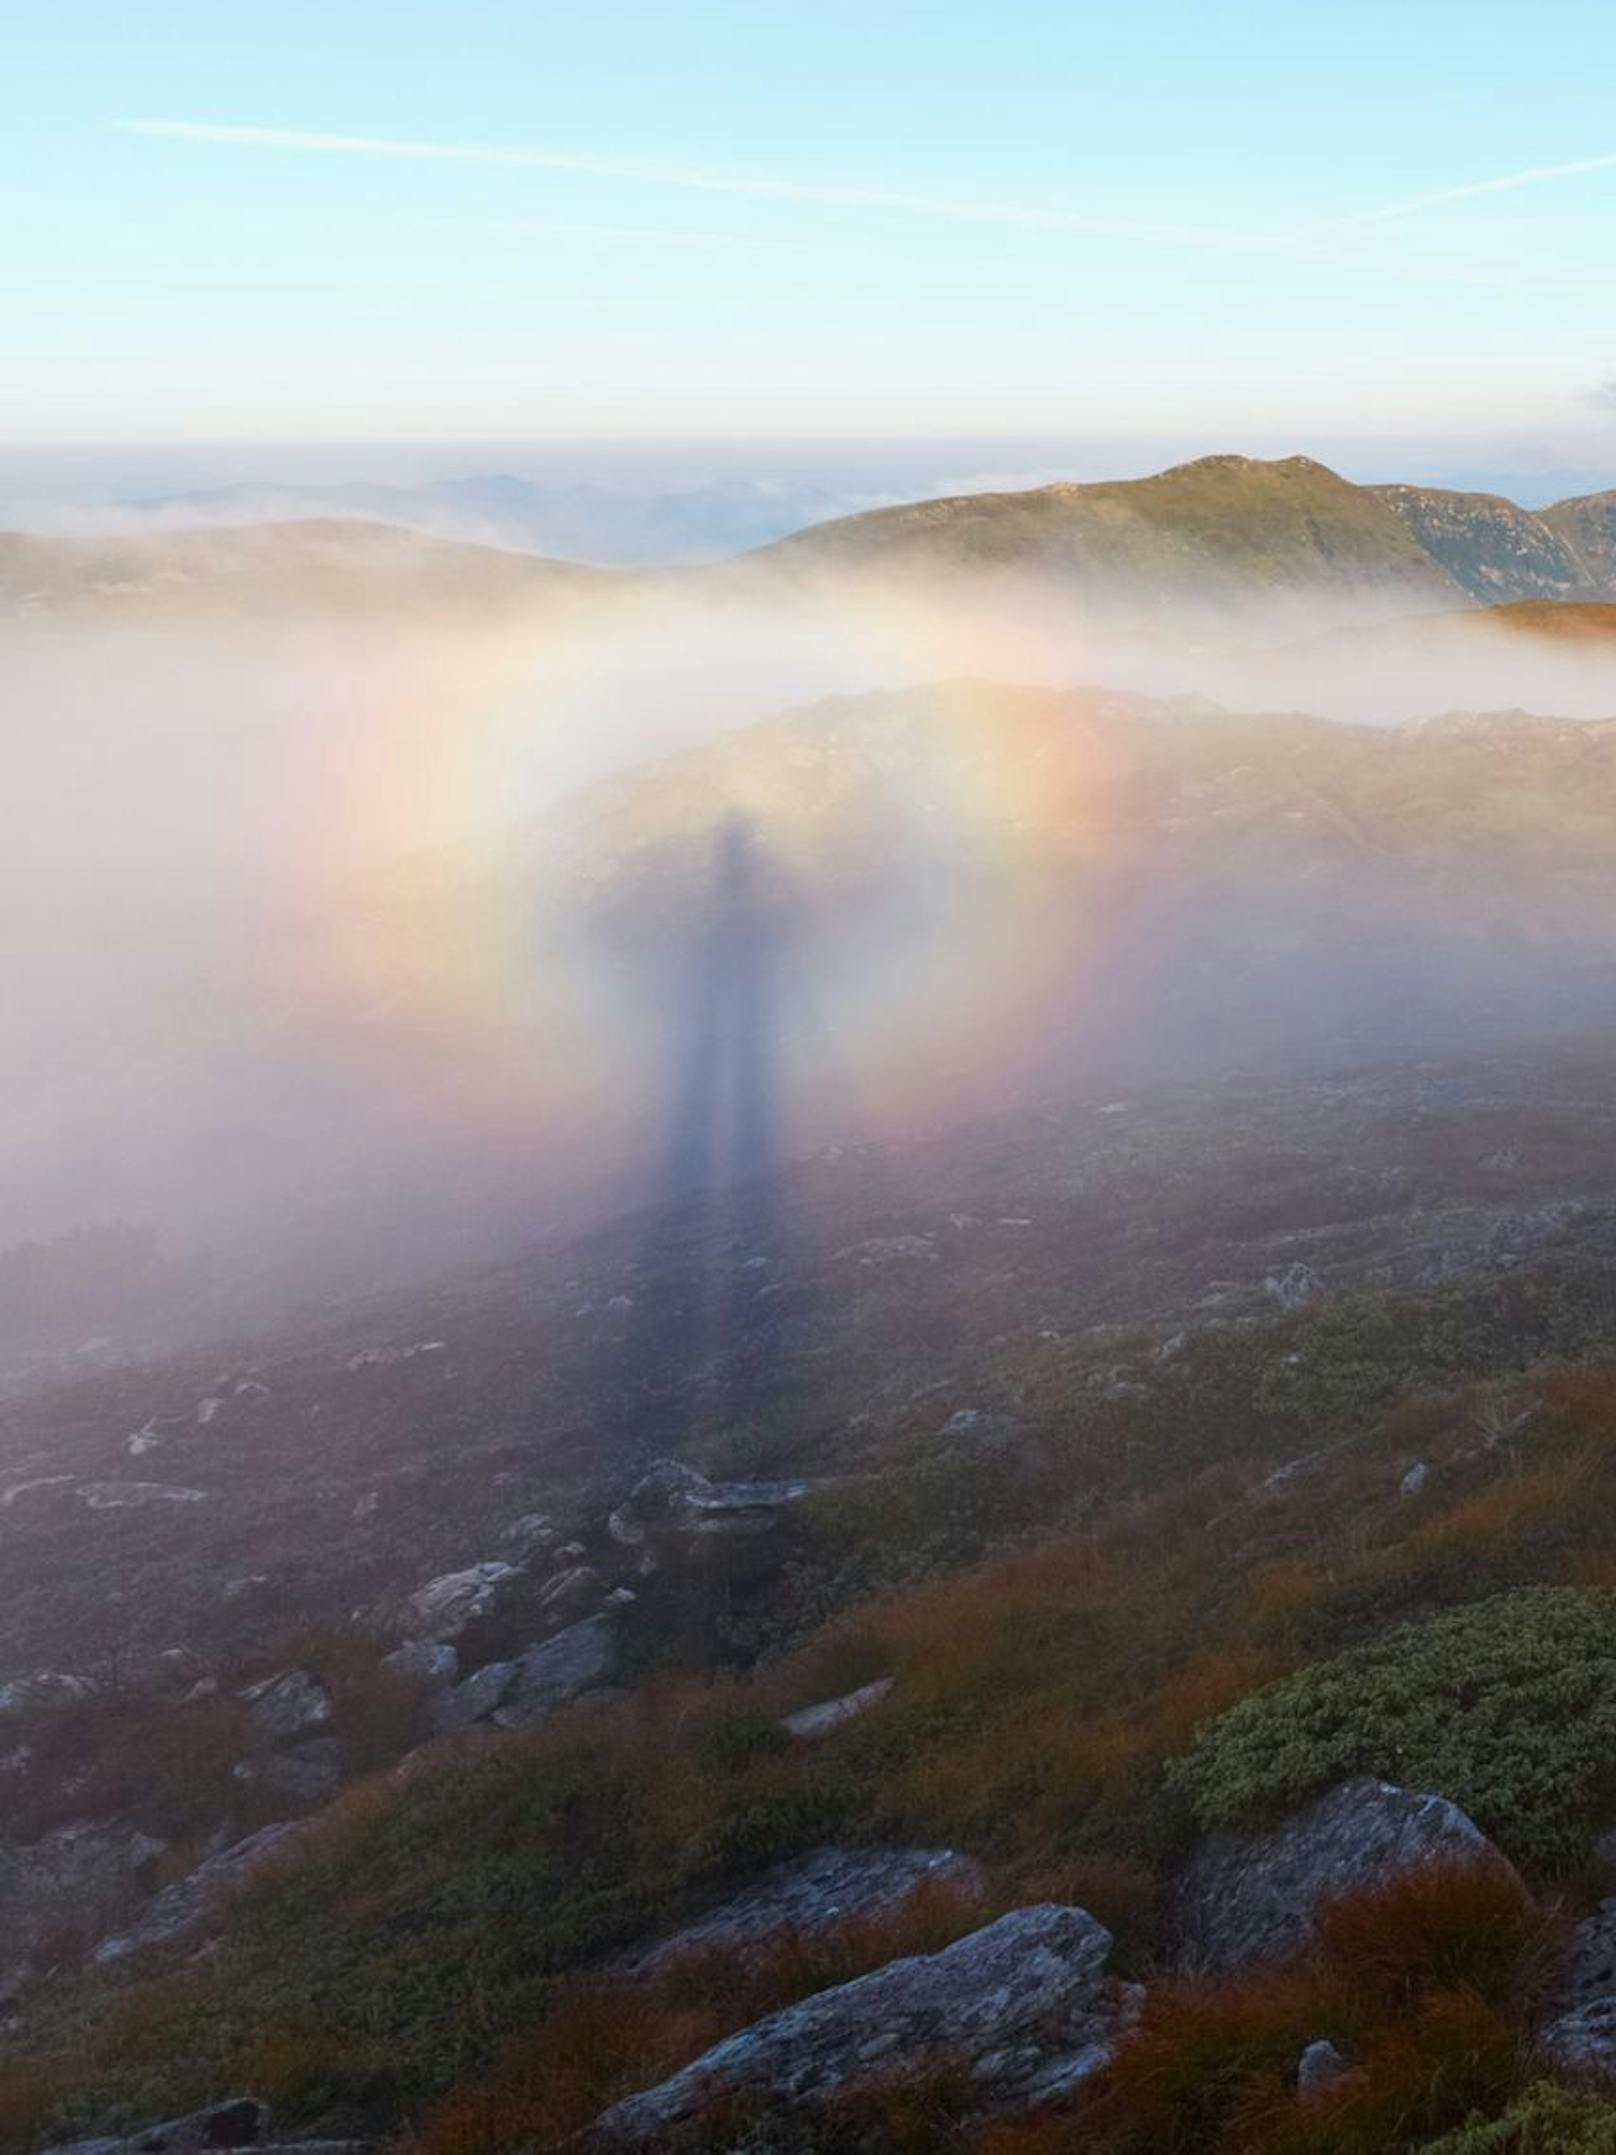 Bei dem sogenannten Brockengespenst handelt sich um den Schatten des Beobachters, der durch die Sonne in eine tiefer gelegene Nebelschicht projiziert wird.